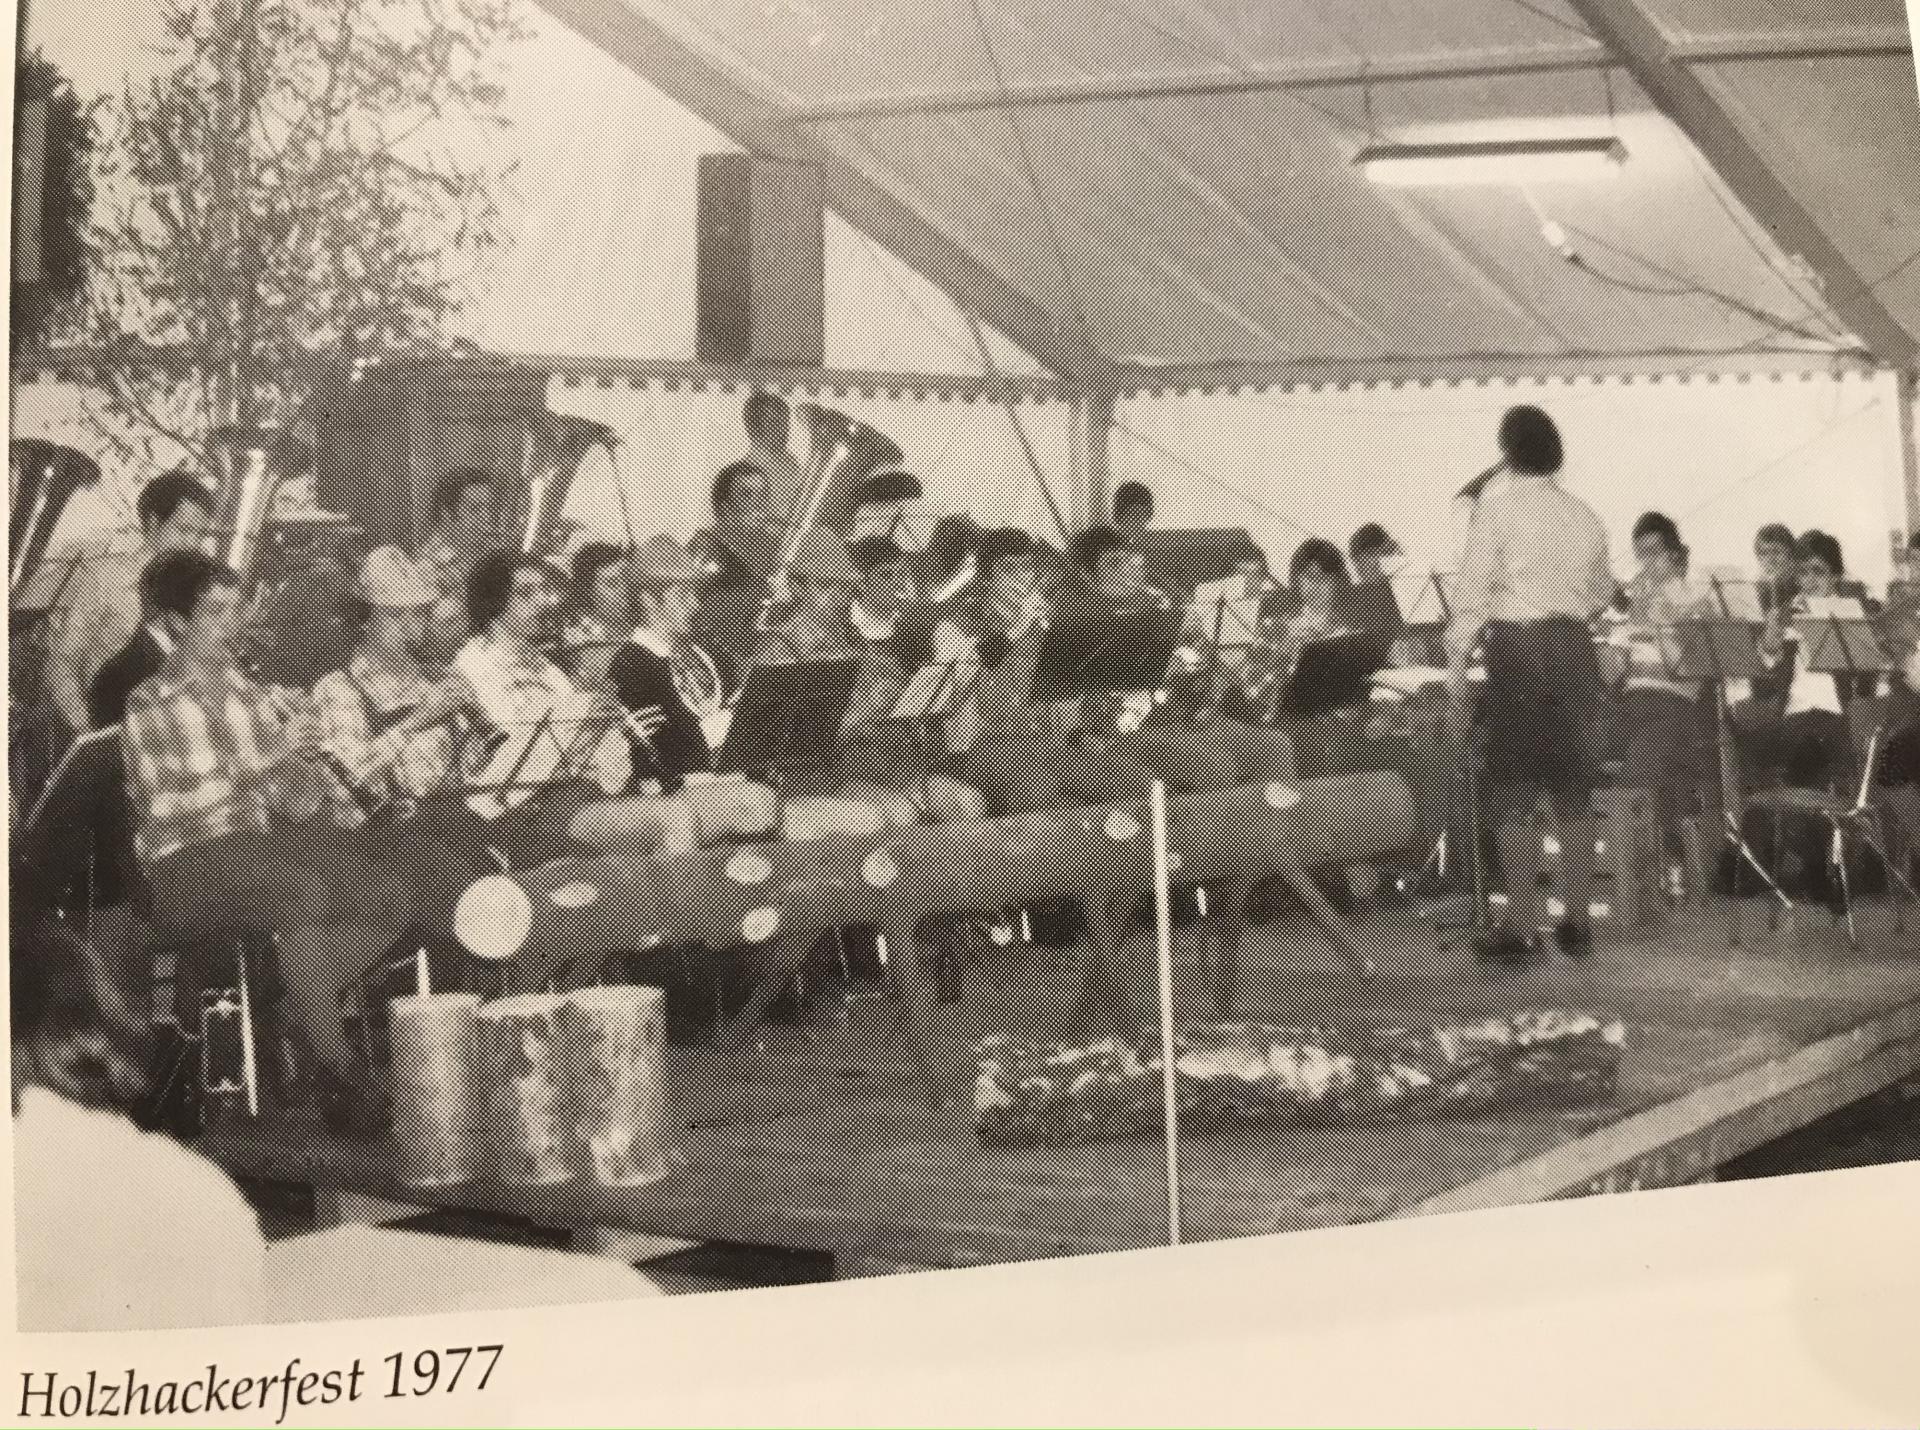 Holzbackerfest 1977